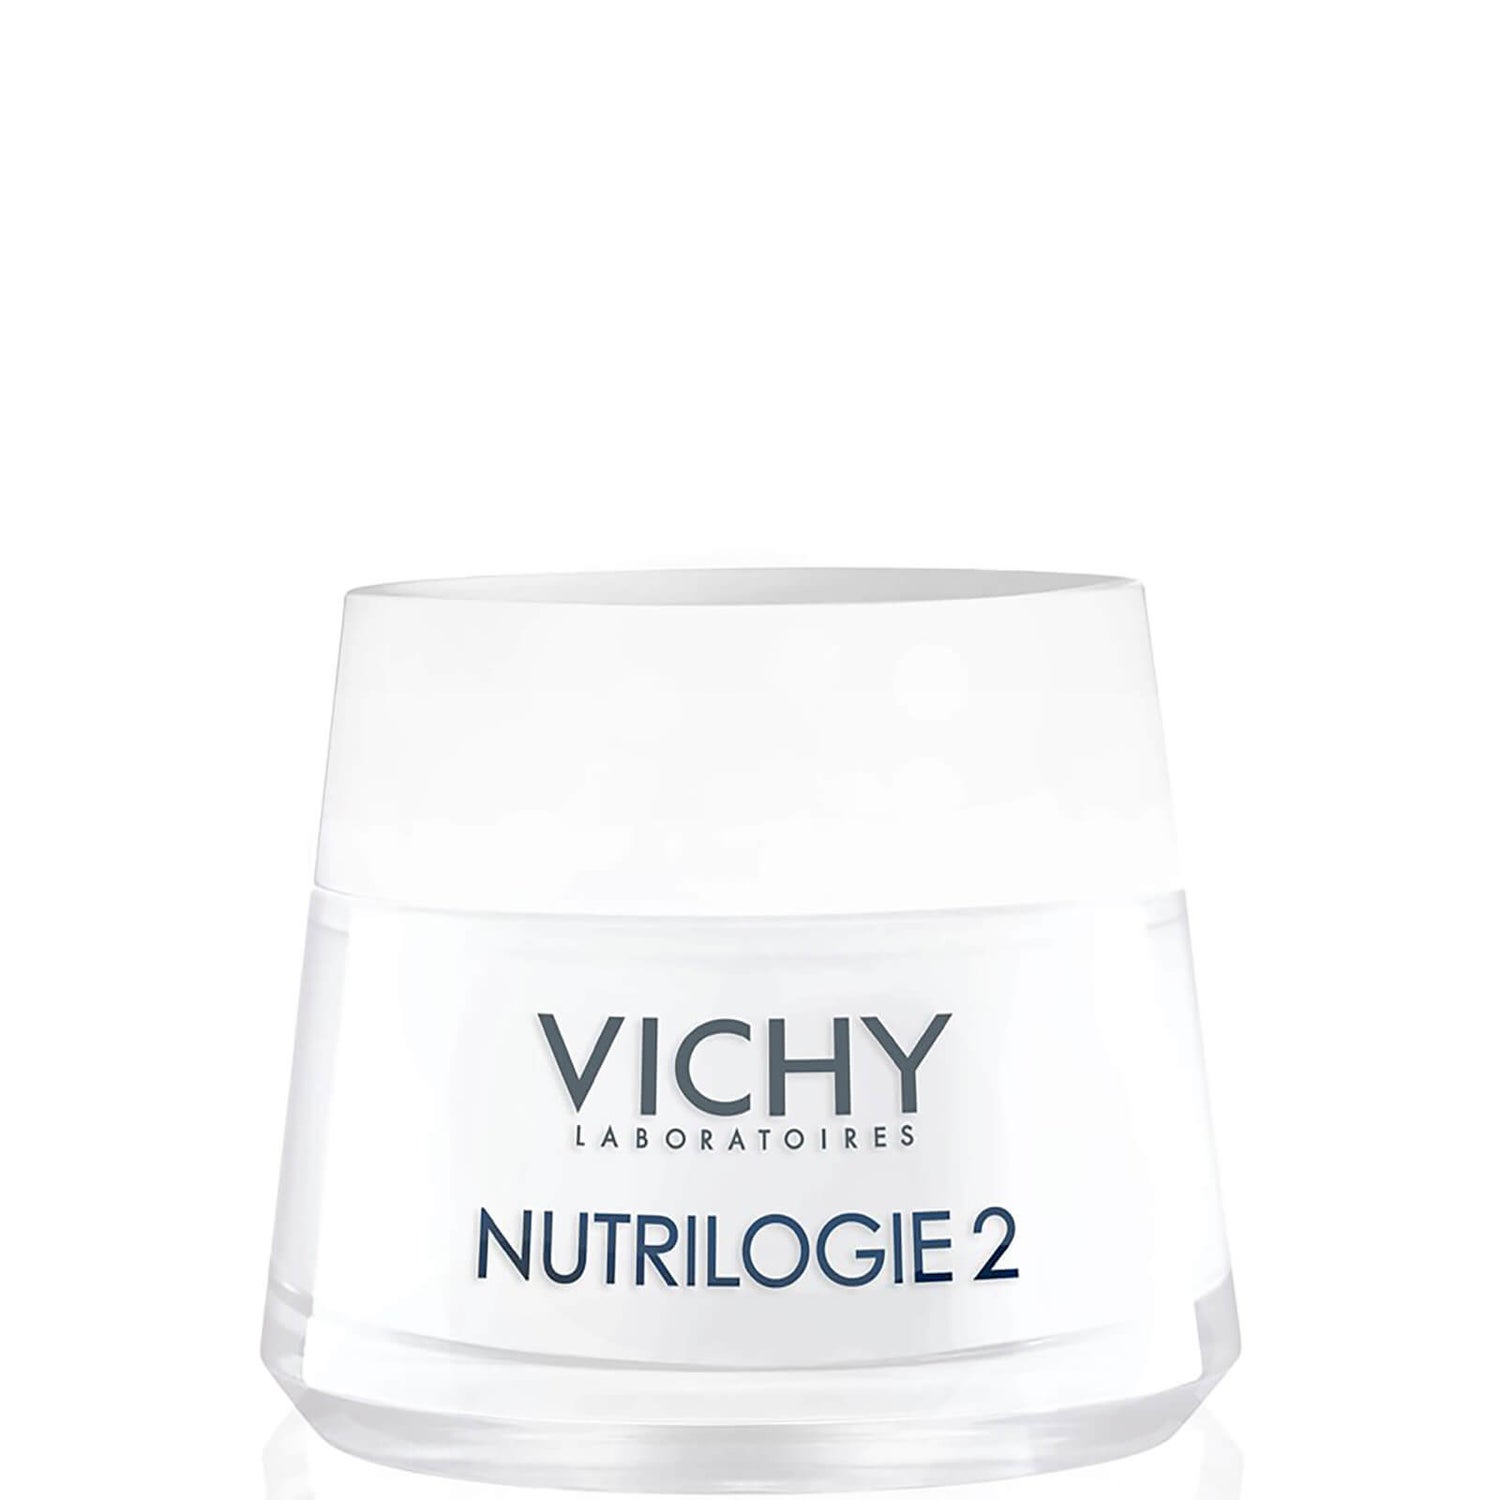 Vichy Nutrilogie 2 crema giorno intensa per pelli molto secche 50 ml